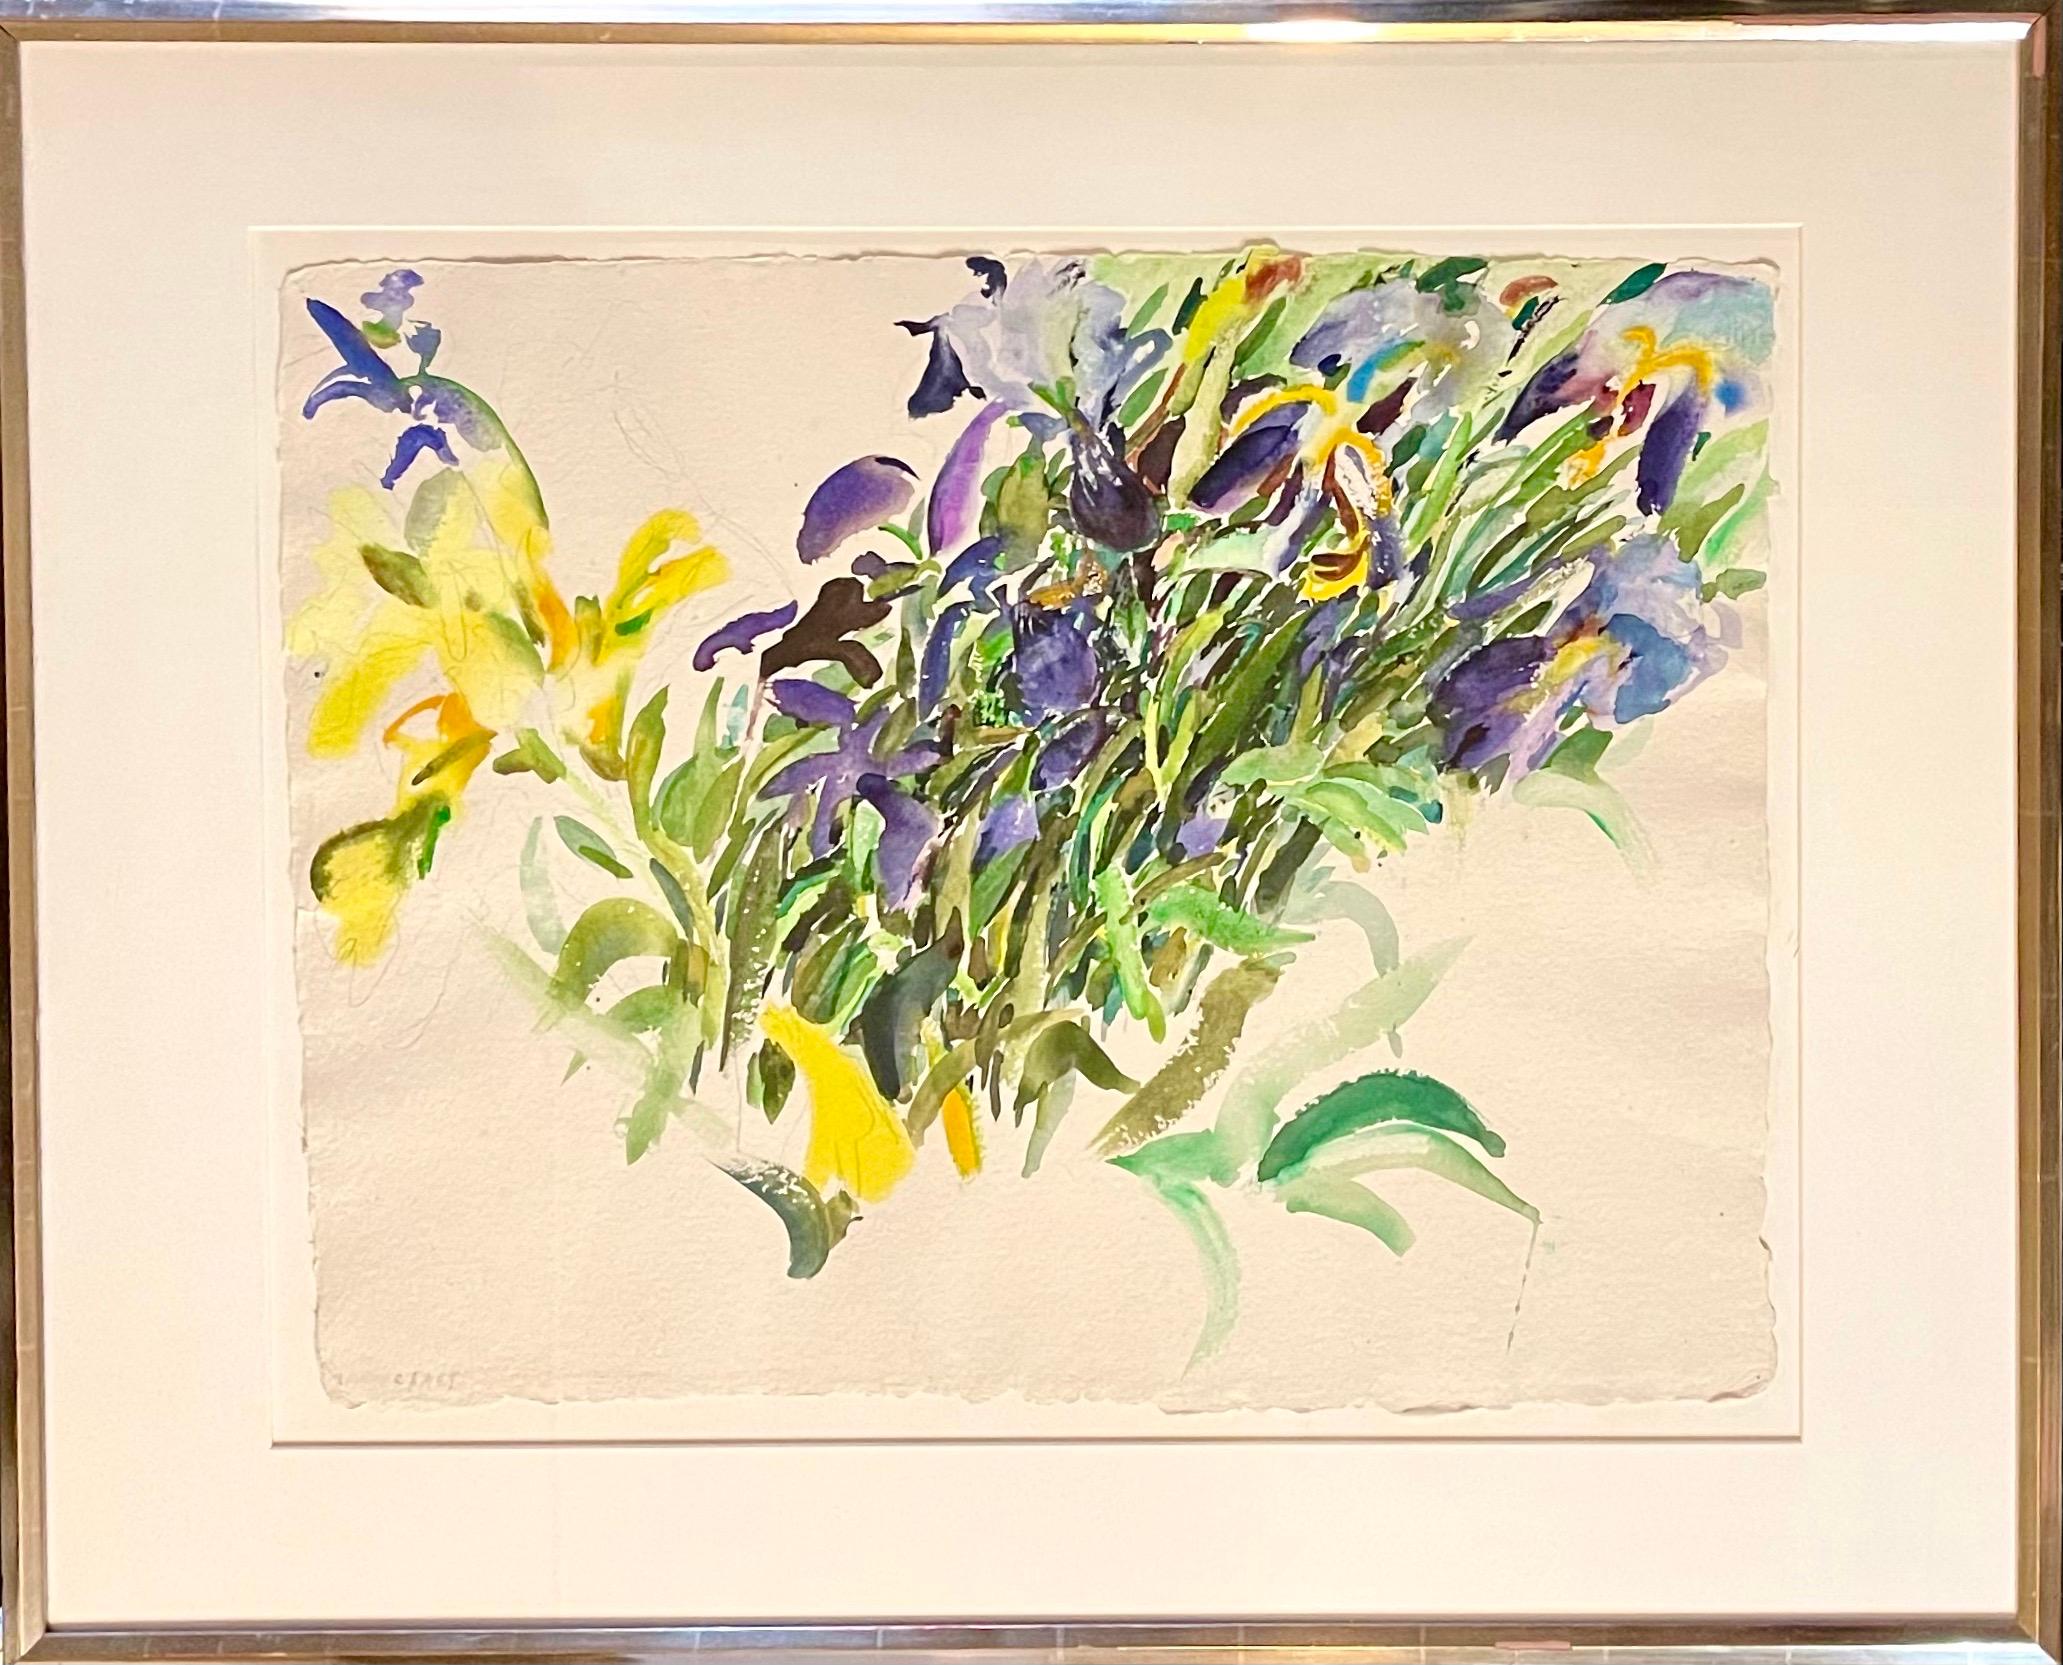 Handsignierte Schwertlilien (lila und gelbe Blüten)
30 X 37 gerahmt. 20.5 X 26,5 Blatt ohne Rahmen.

Bernard Chaet (geb. 1924, Boston, MA - 2012) war ein amerikanischer Künstler. Chaet ist bekannt für seine farbenfrohen, dynamischen modernistischen